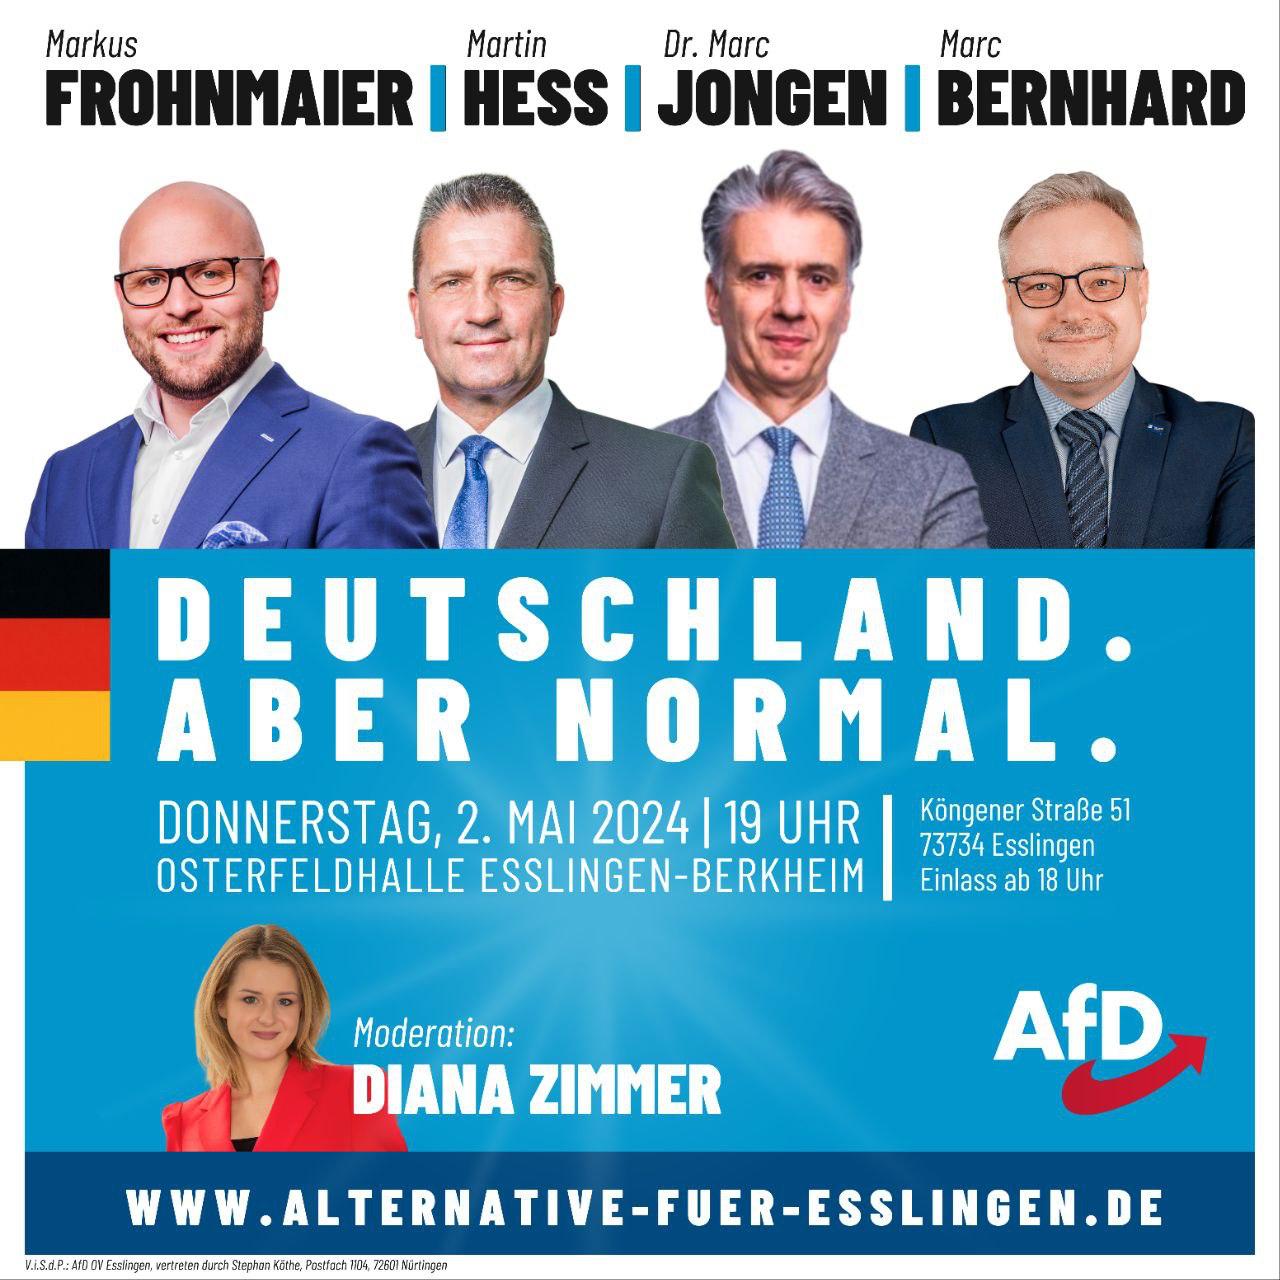 Veranstaltung mit Markus Frohnmaier (Landesvorsitzender), Martin Hess, Dr. Marc Jongen und Marc Bernhard in der Osterfeldhalle Esslingen-Berkheim.